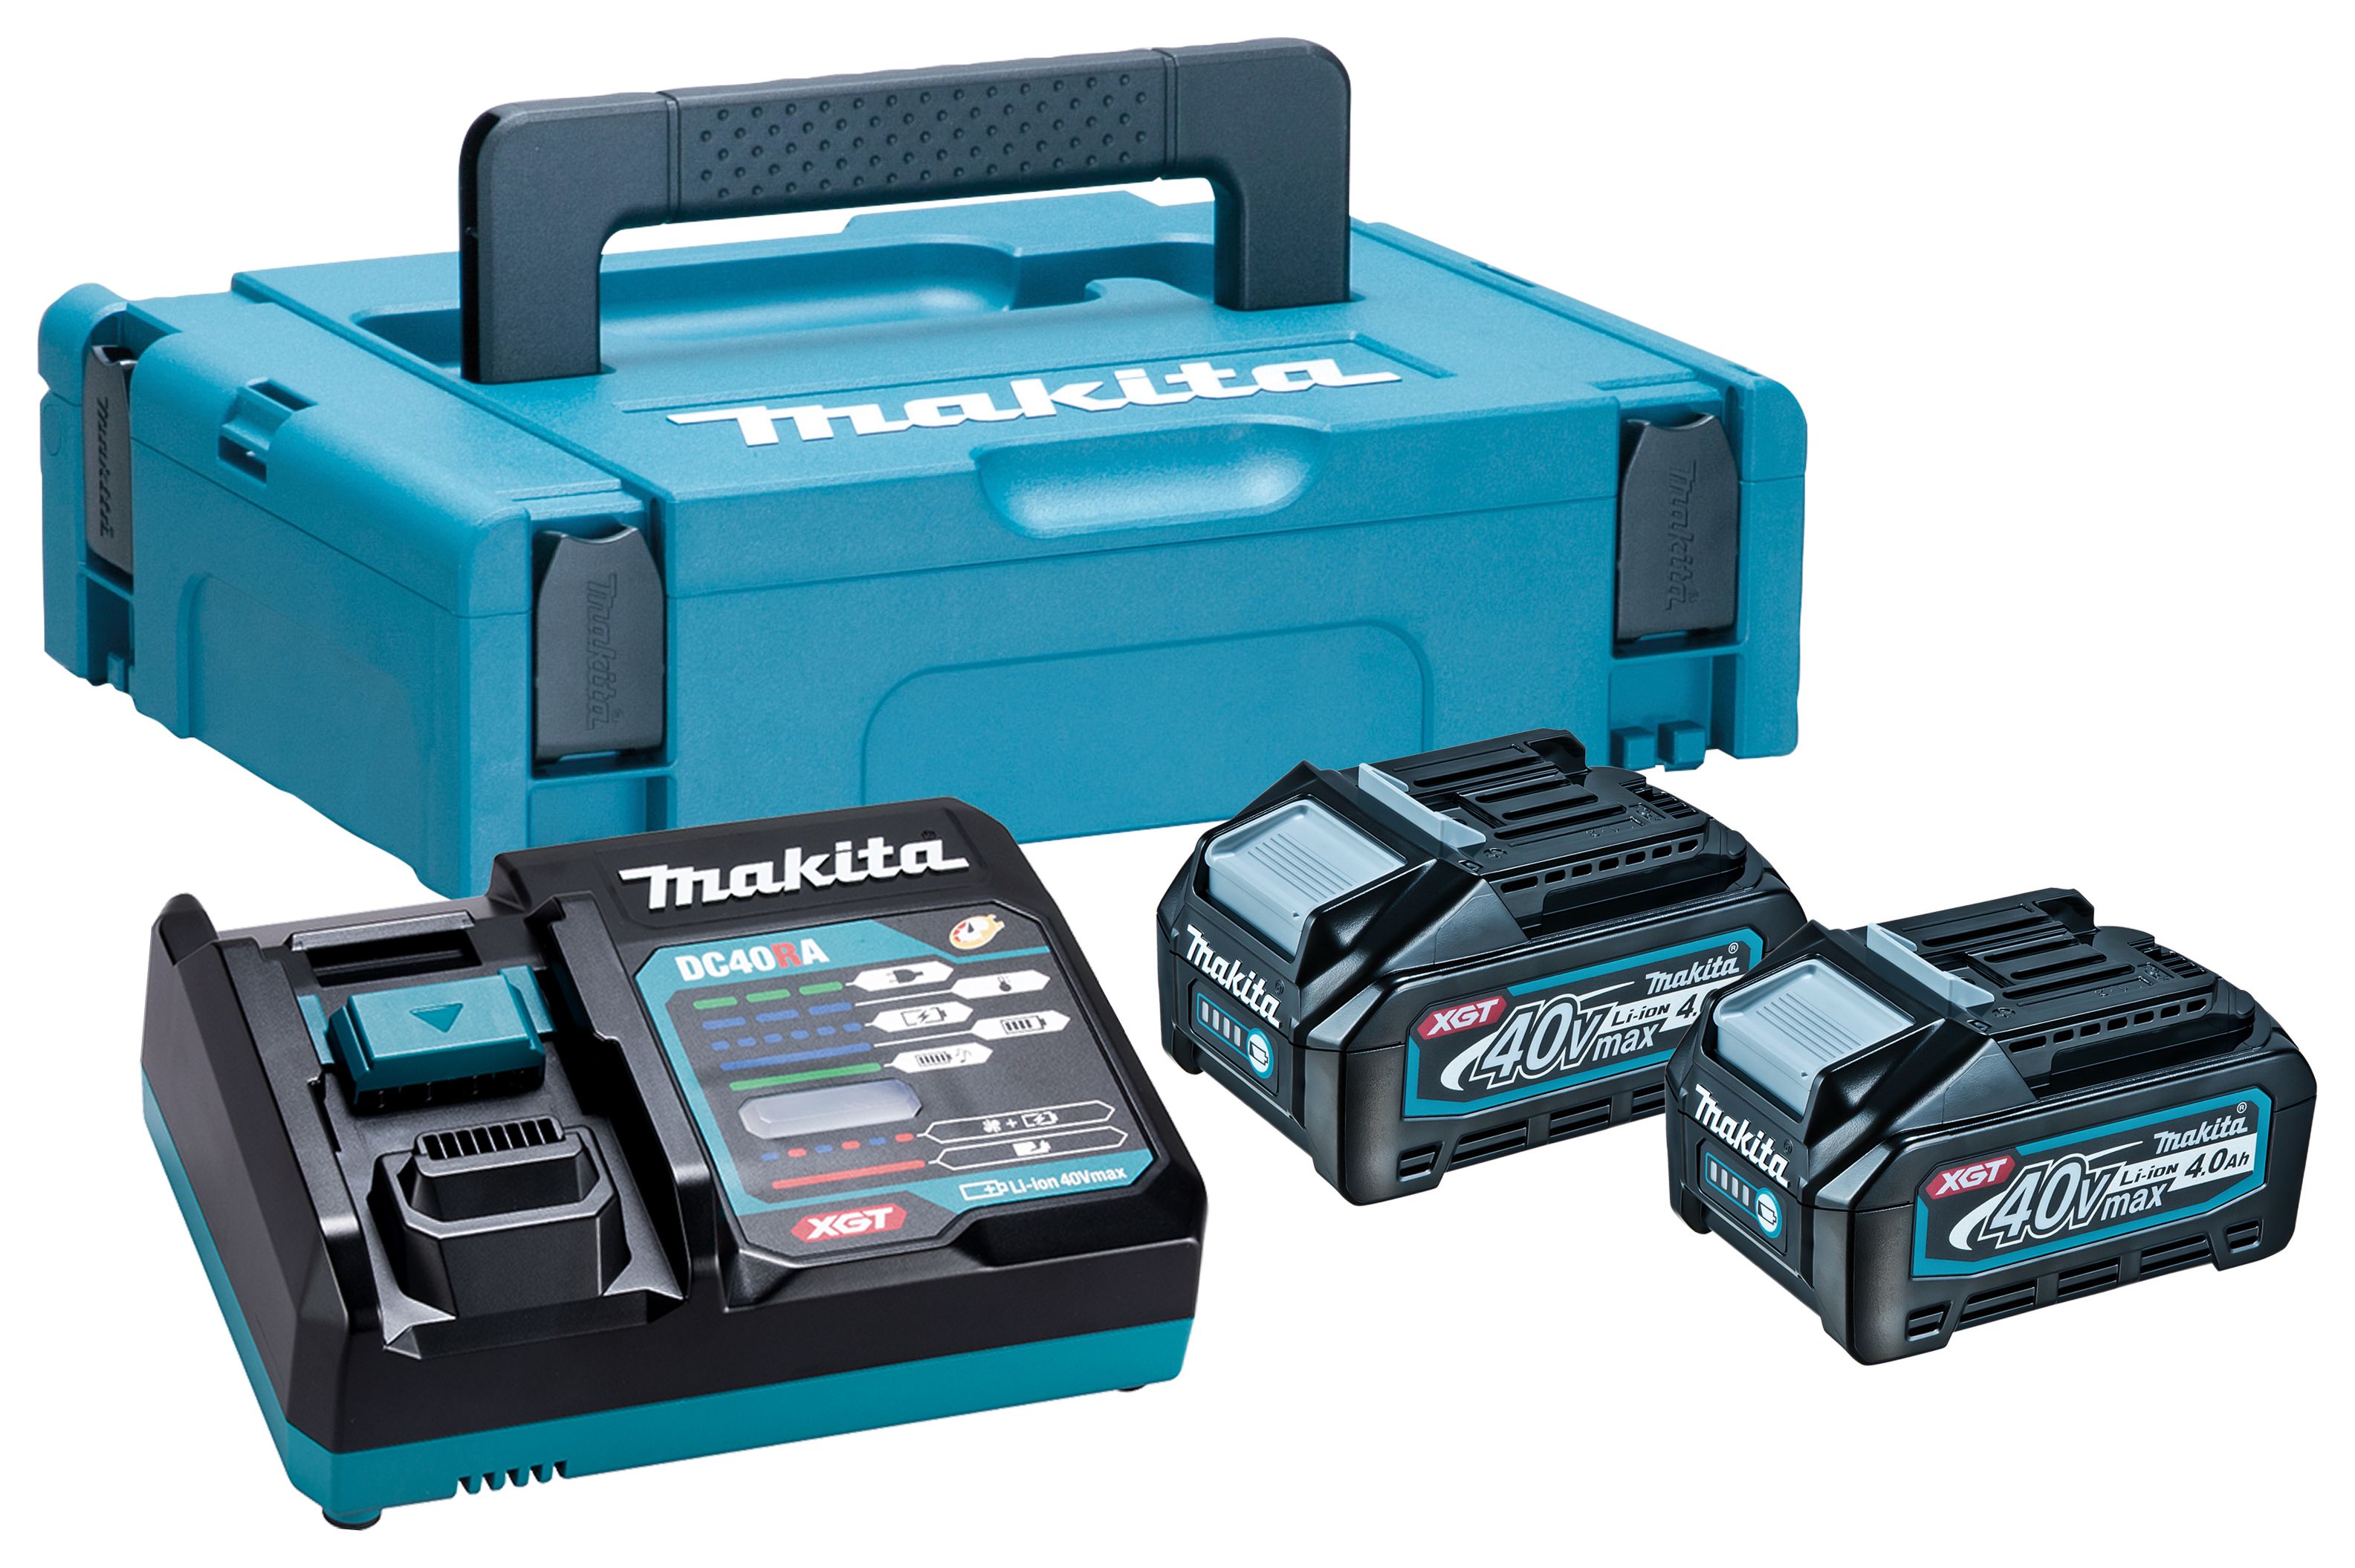 Makita 191K01-6 XGT 40Vmax 2 x 4.0Ah Batteries & Charger Kit